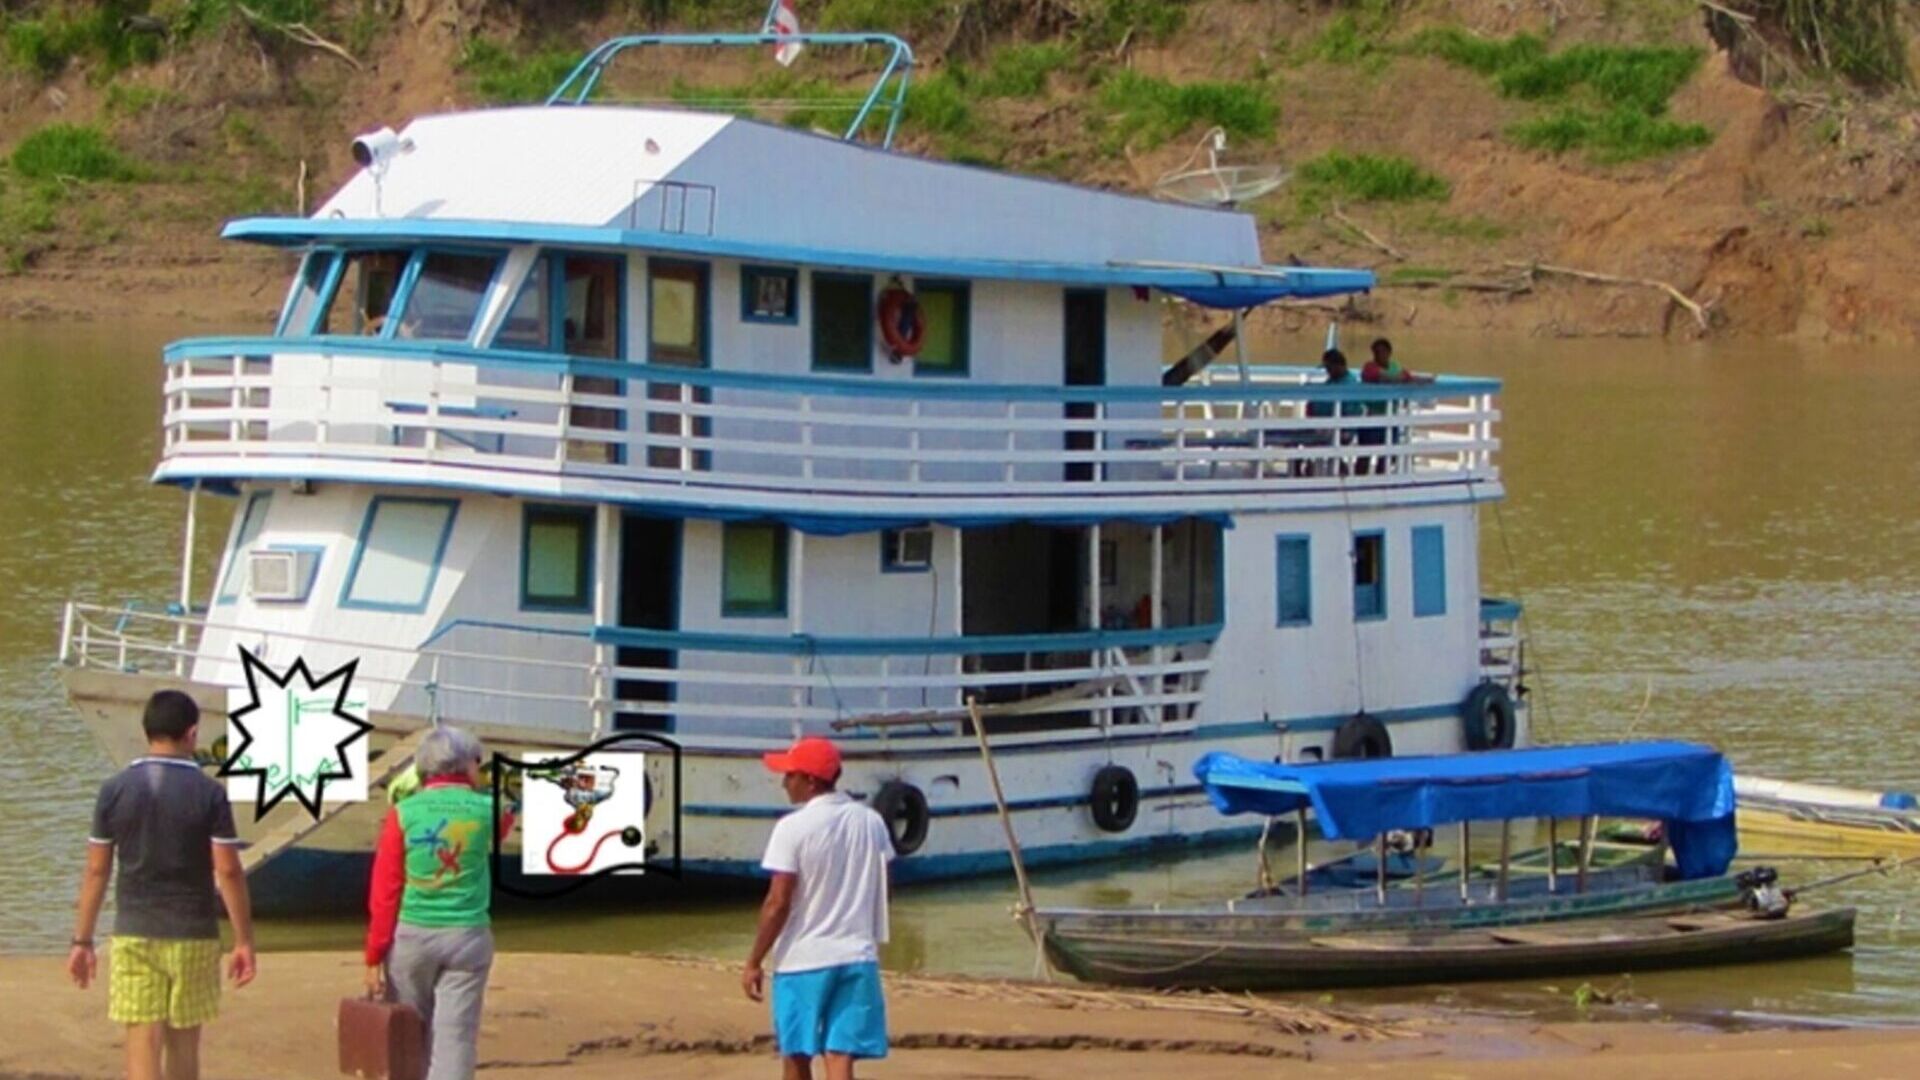 Intelligenza Artificiale: il Barco Hospital è un ricovero clinico galleggiante che si muove lungo il fiume Purus in Amazzonia, gestito dal medico spagnolo Antonia López González